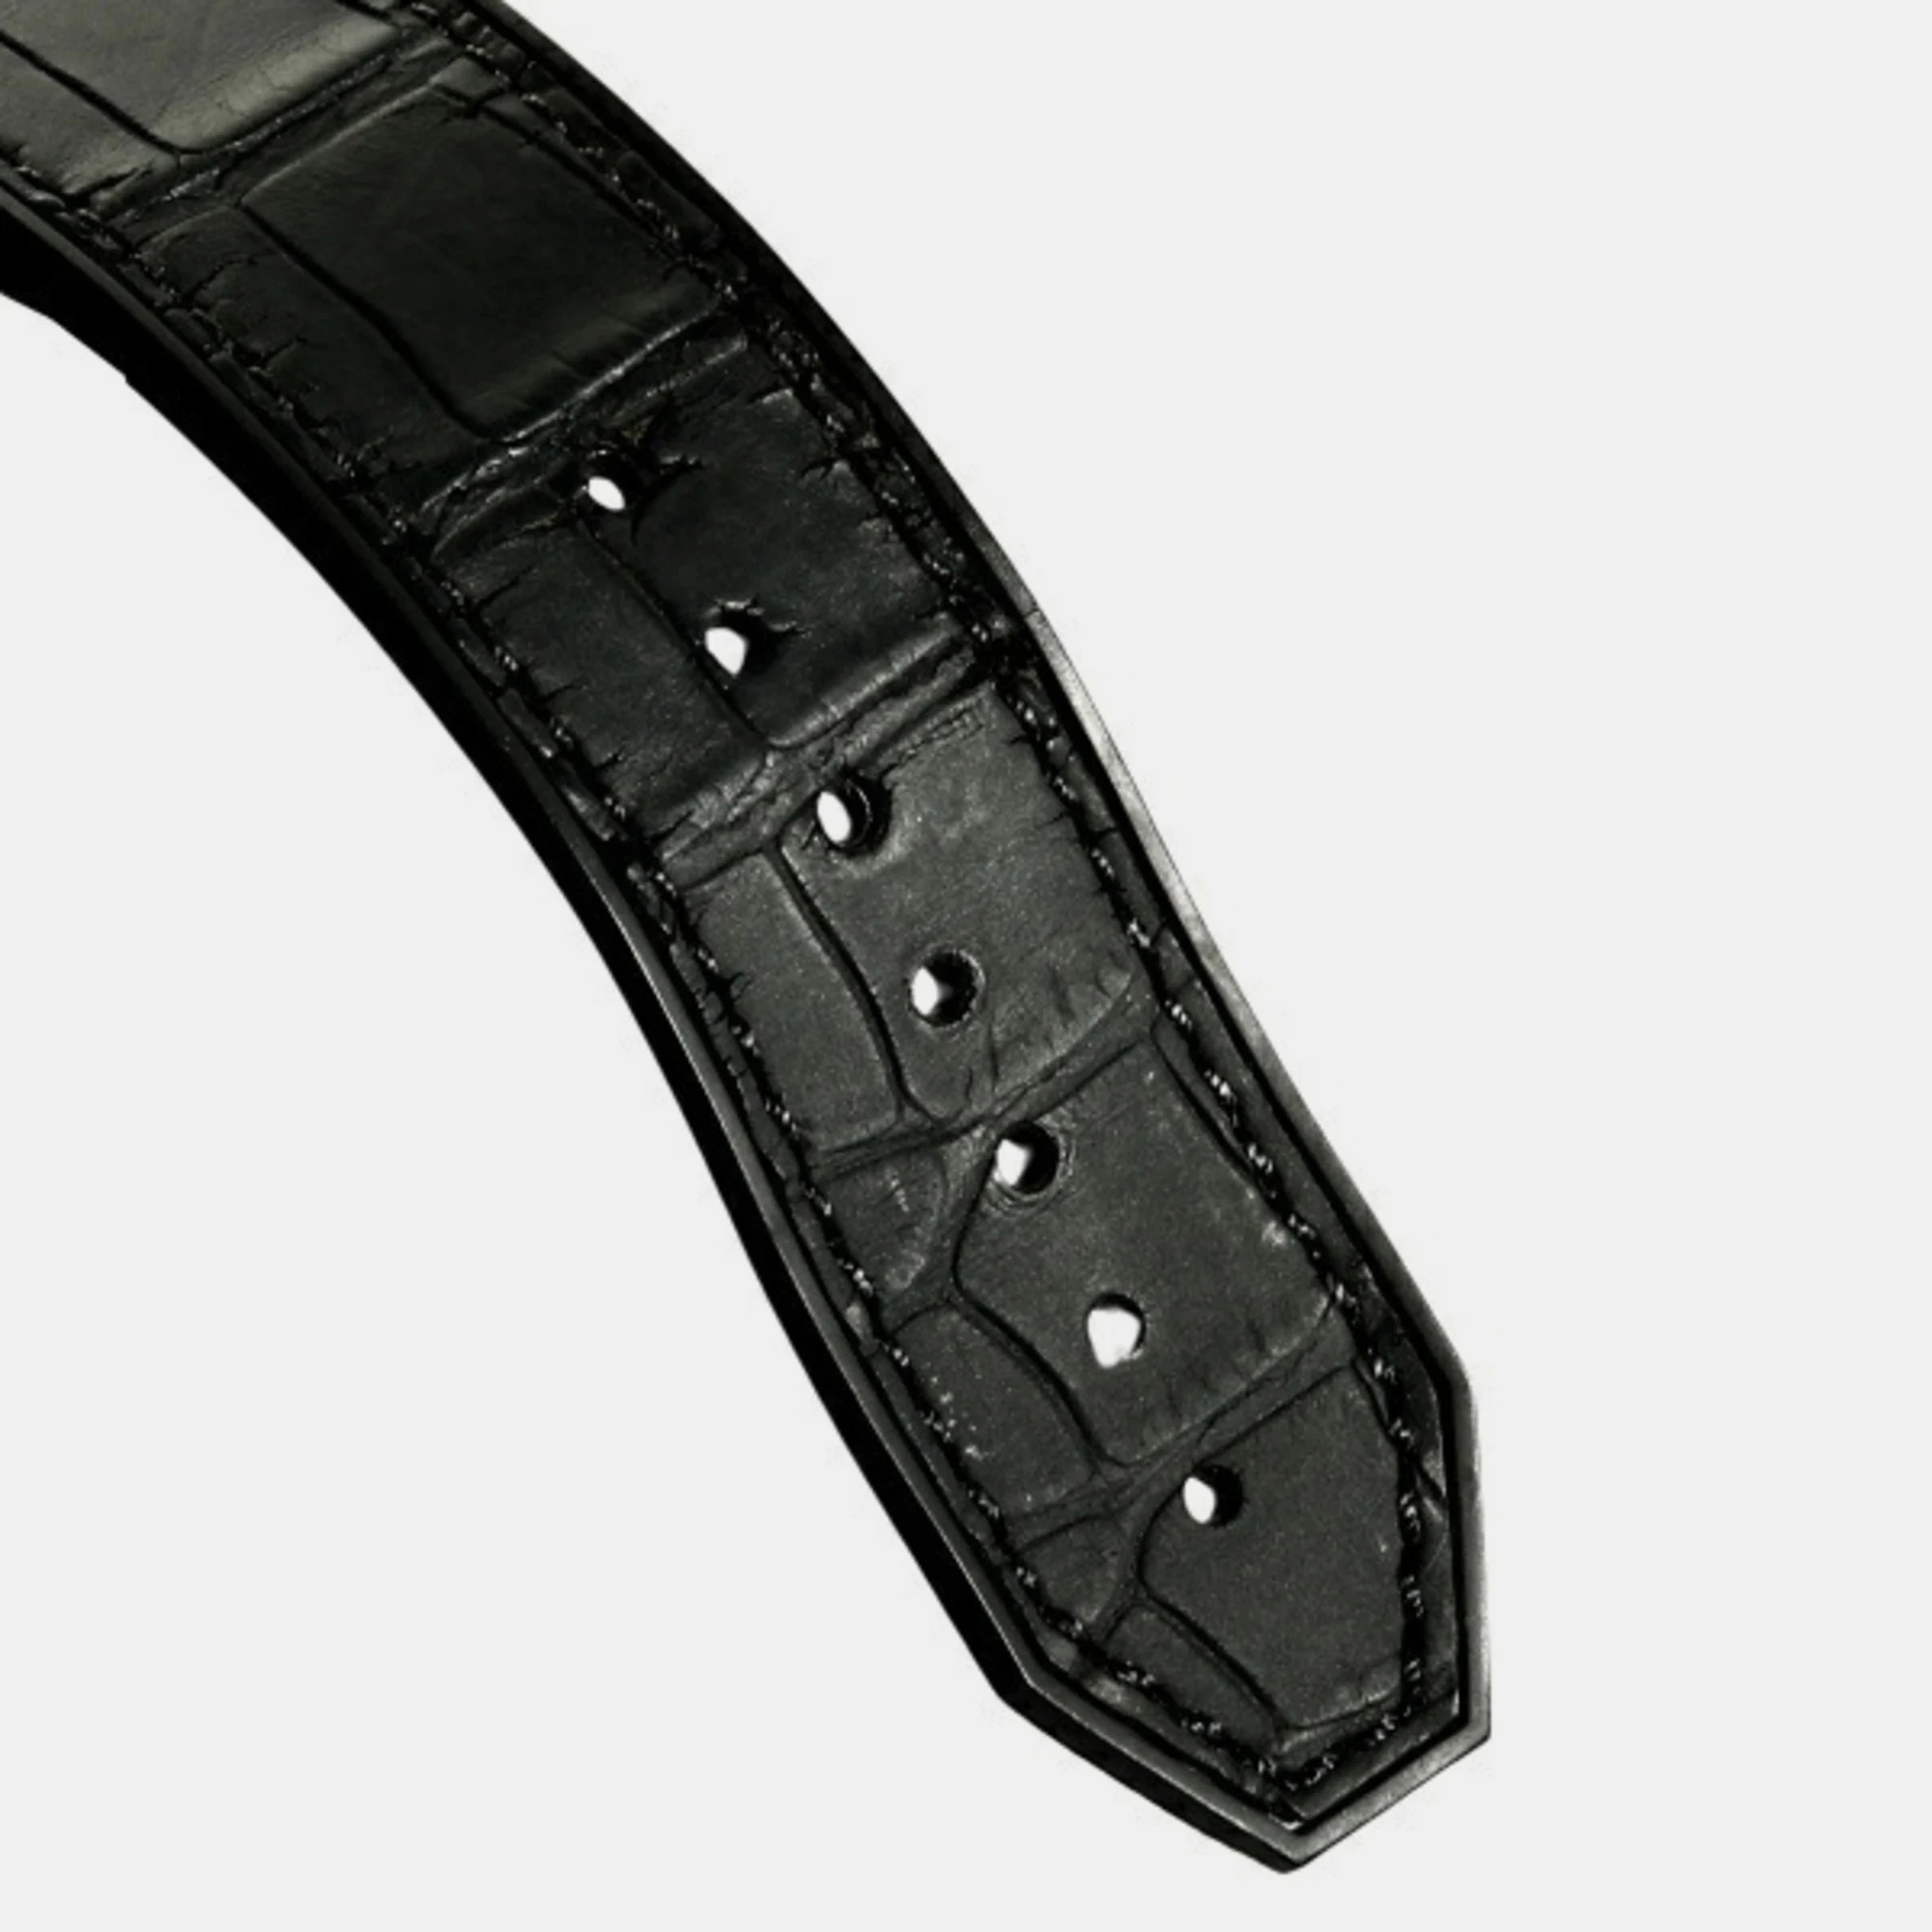 Hublot Black Stainless Steel Big Bang Aero 311.SX.1170.GR.1704 Men's Wristwatch 44 Mm